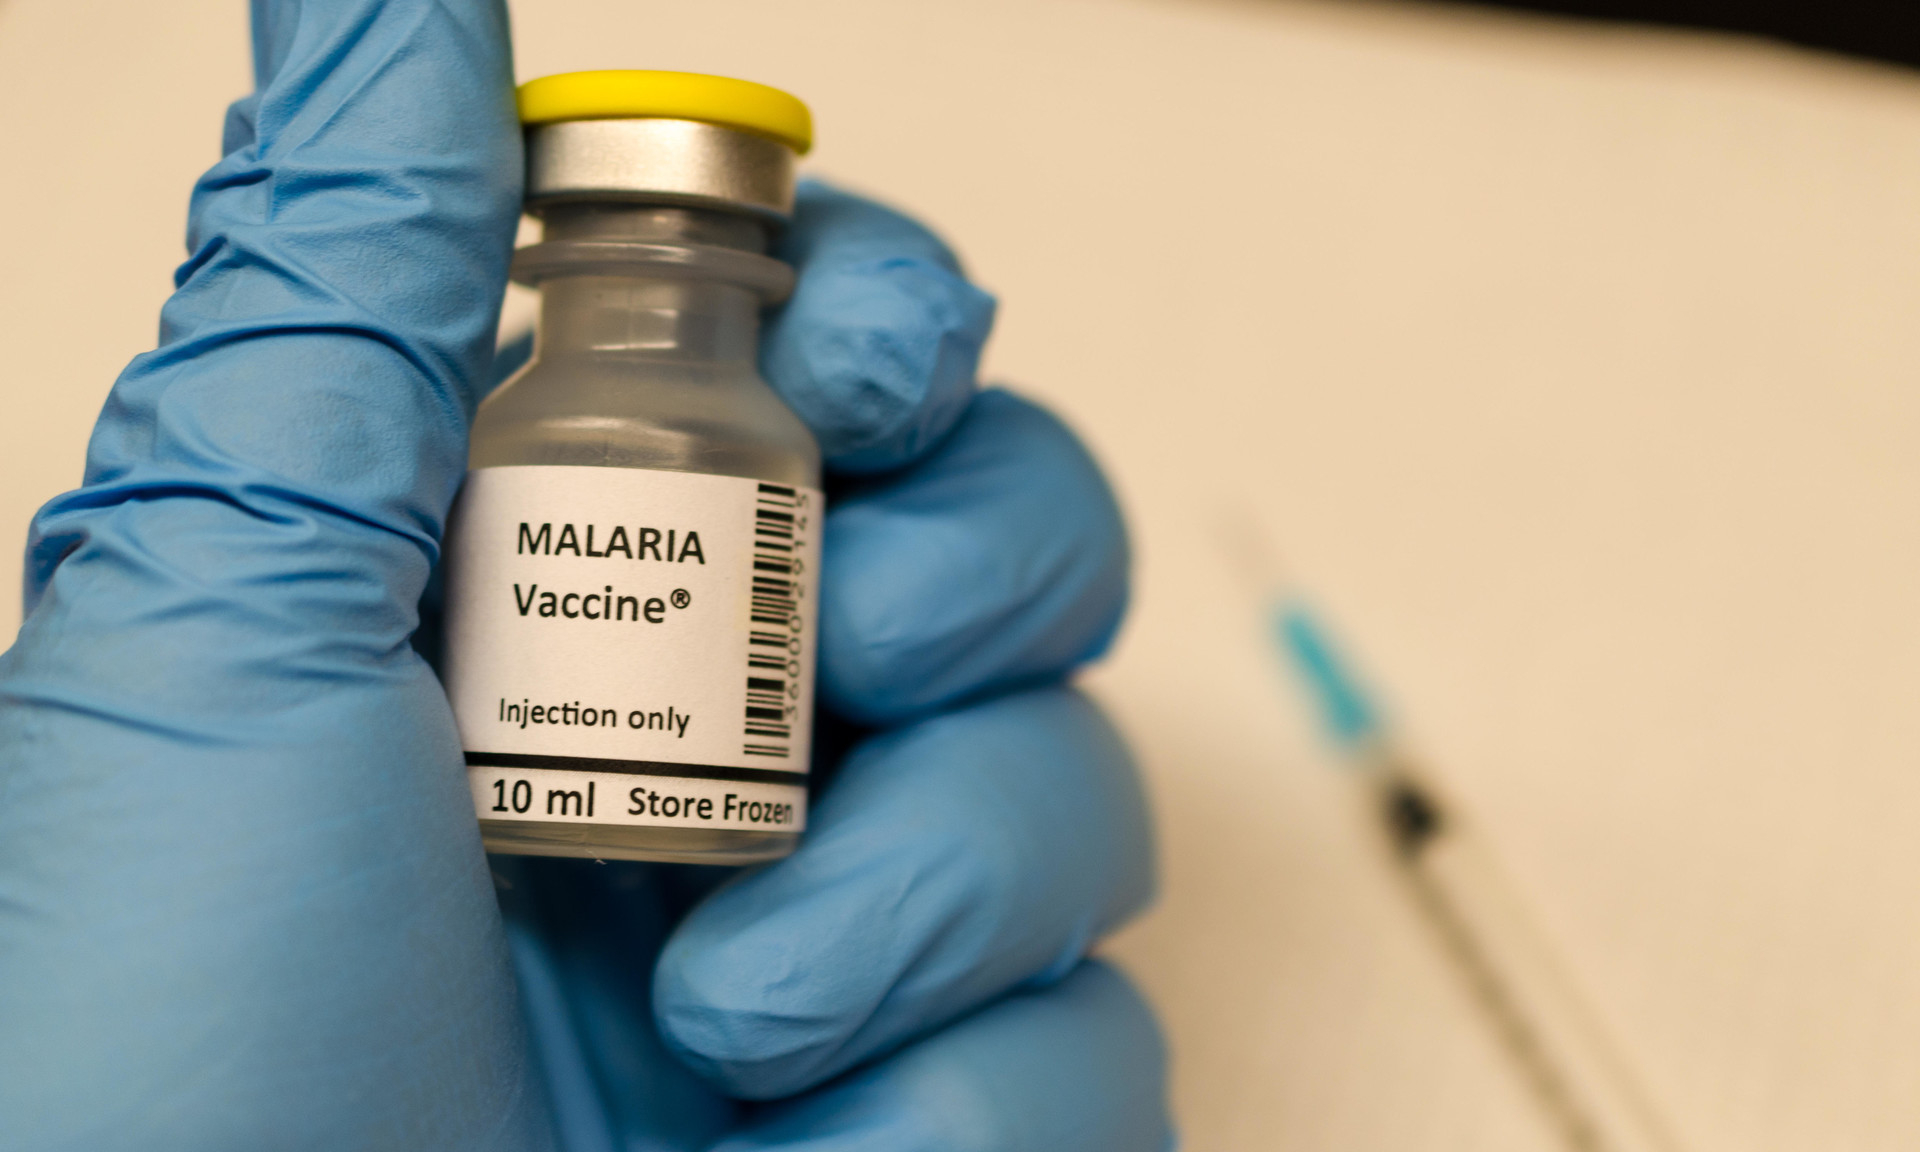 Вакцина от малярии показала обнадеживающие результаты